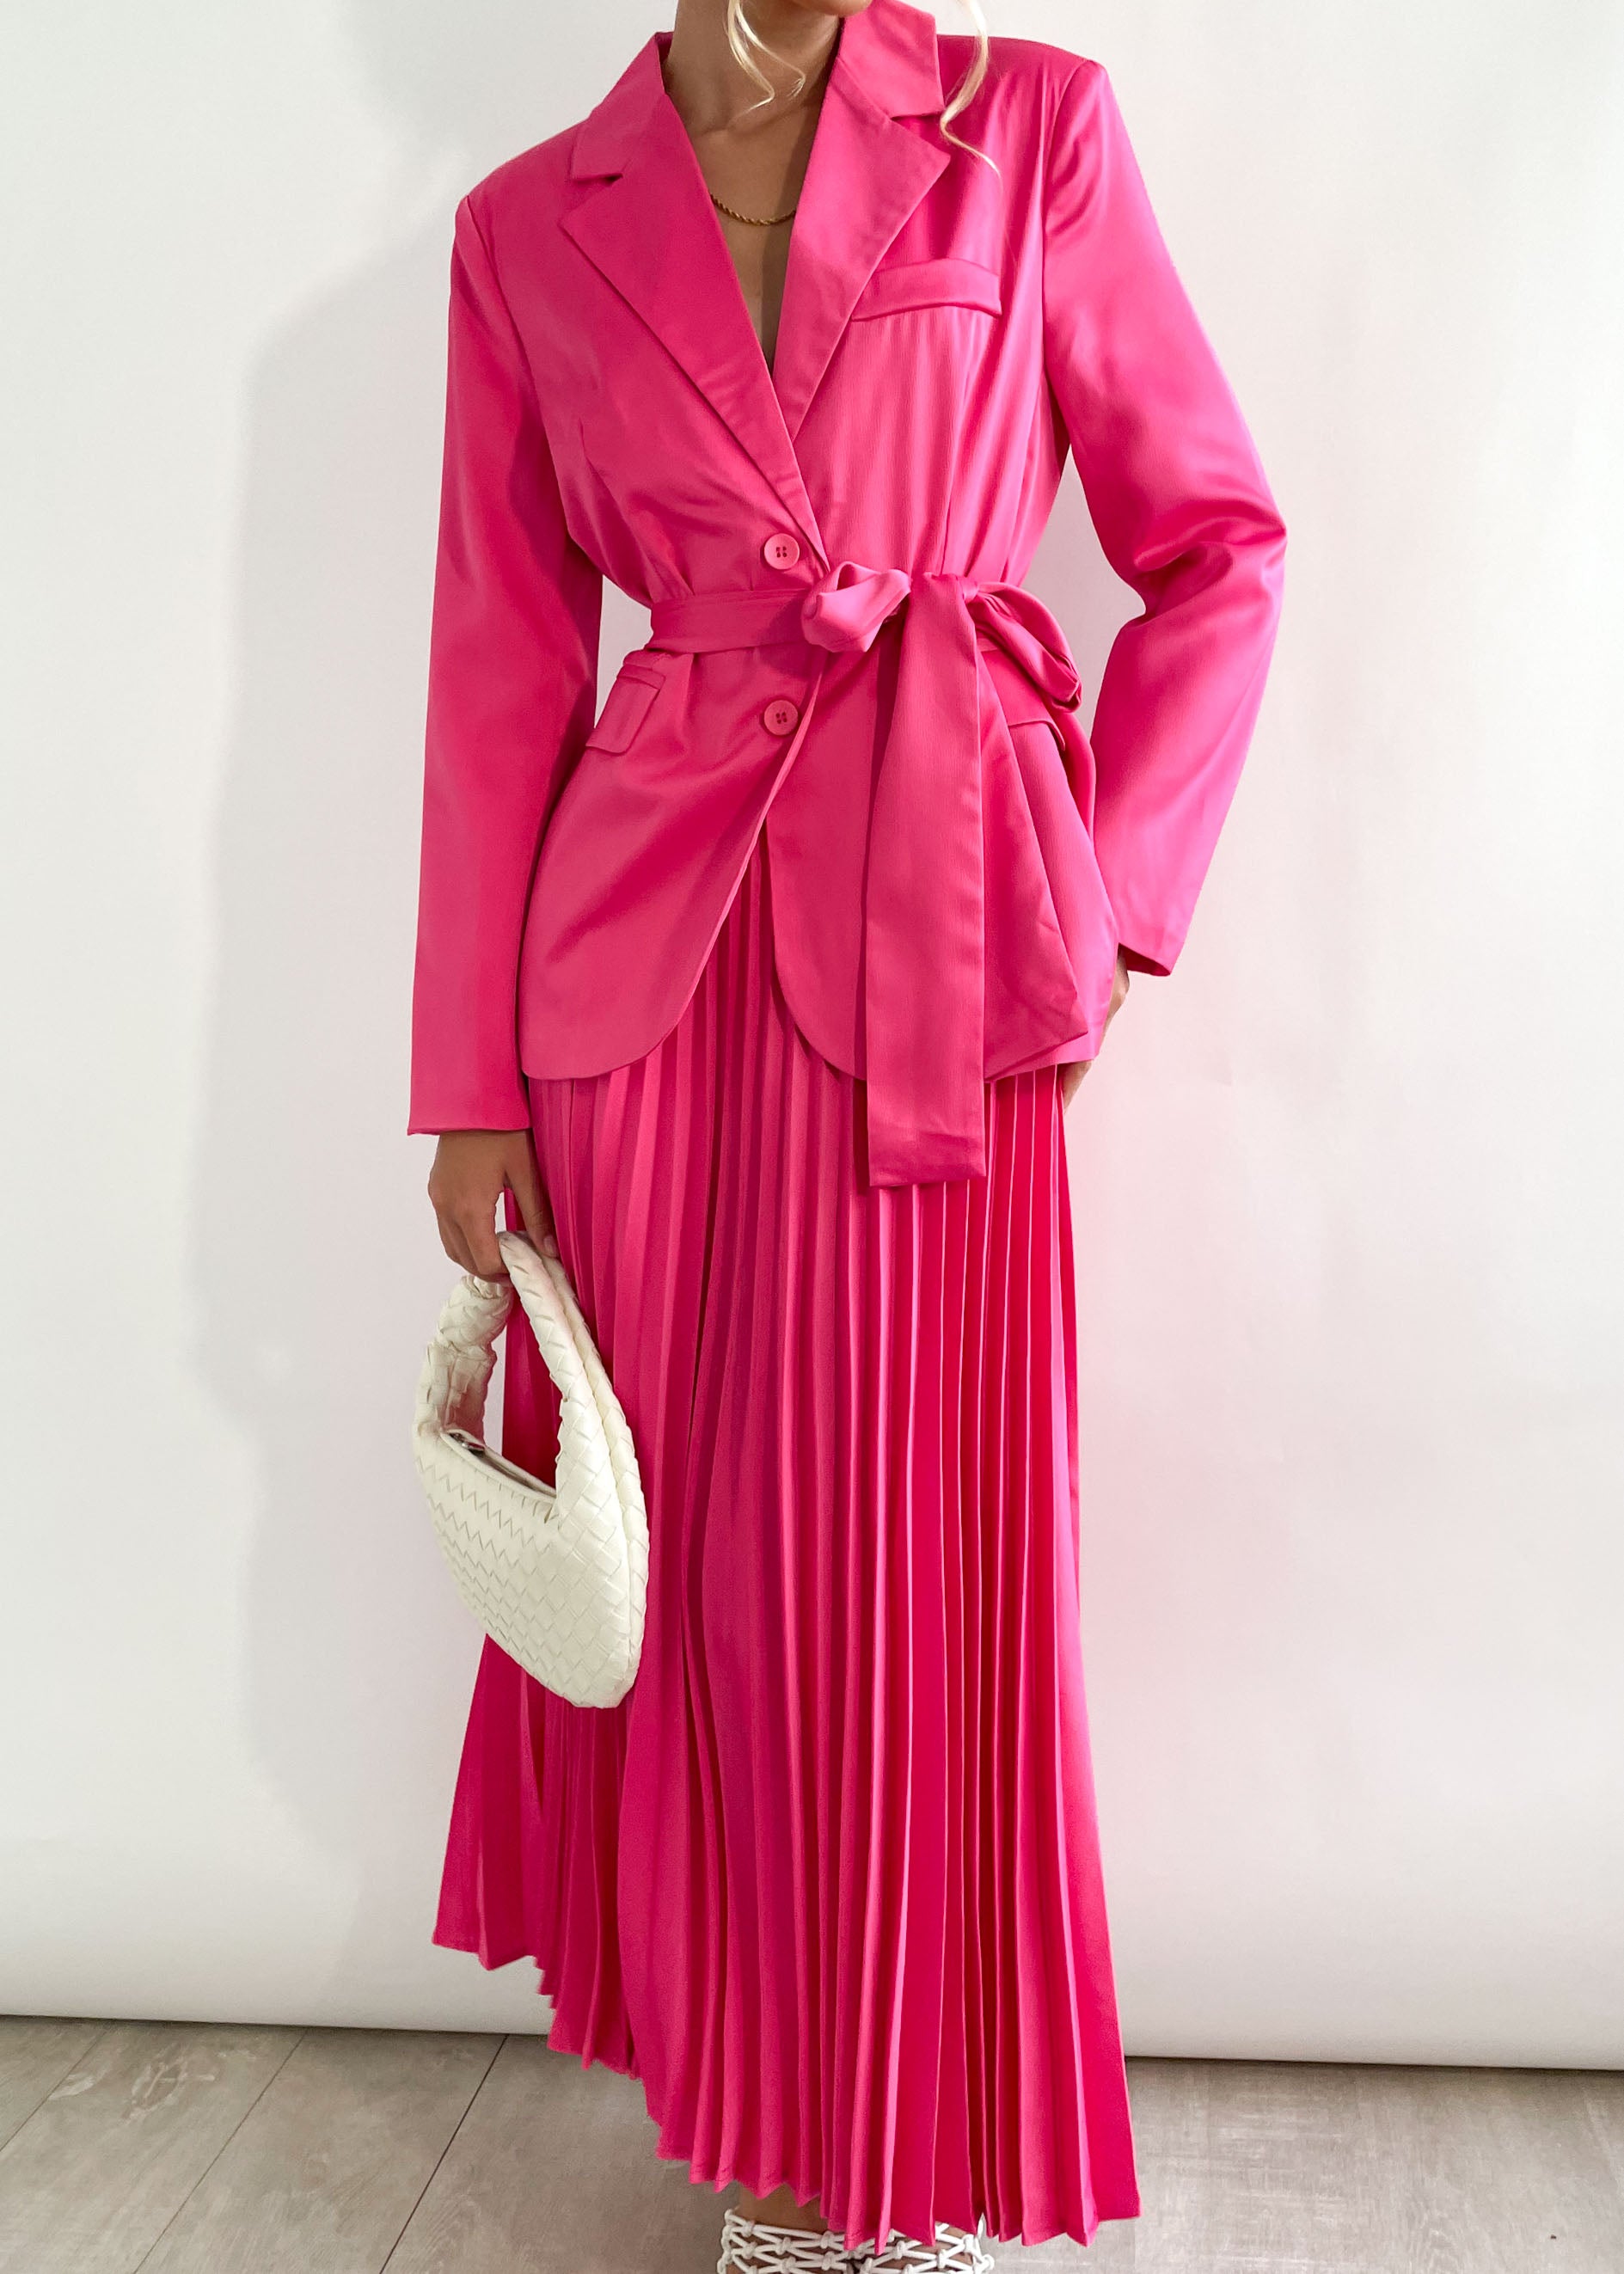 Kelliane Blazer Set - Pink